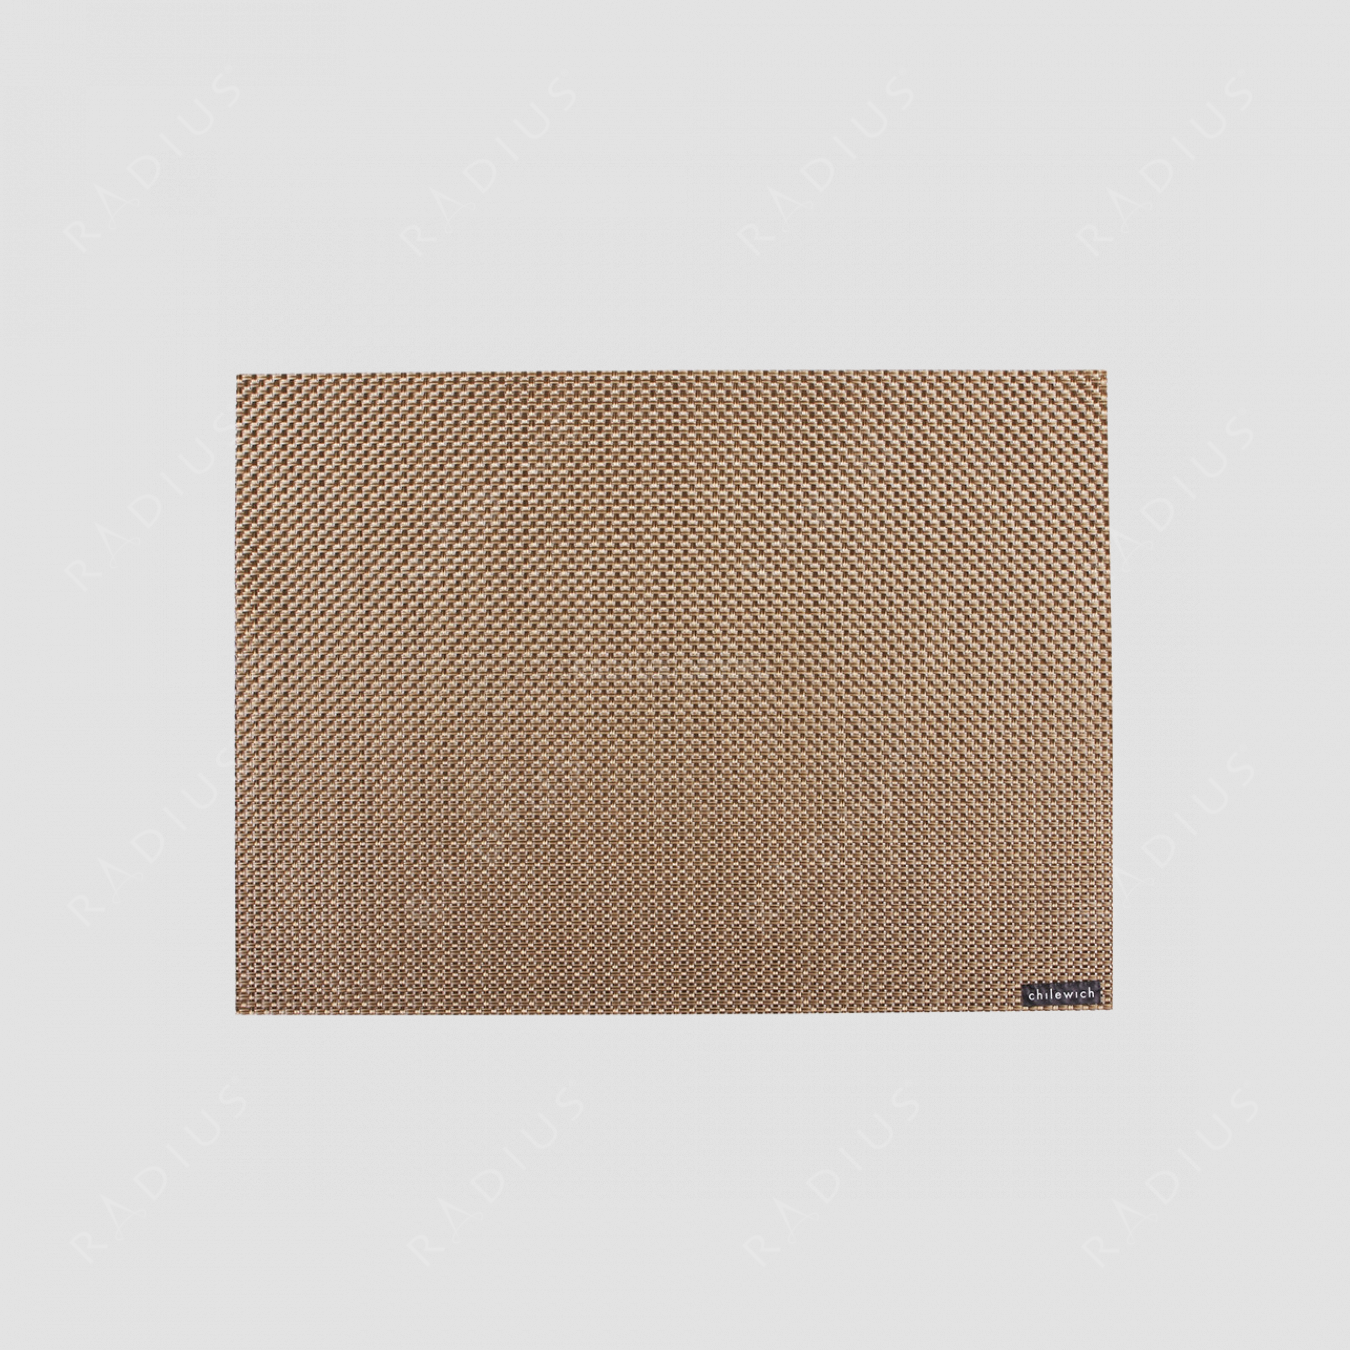 Салфетка подстановочная, жаккардовое плетение, винил, (36х48) New Gold, серия Basketweave, CHILEWICH, США